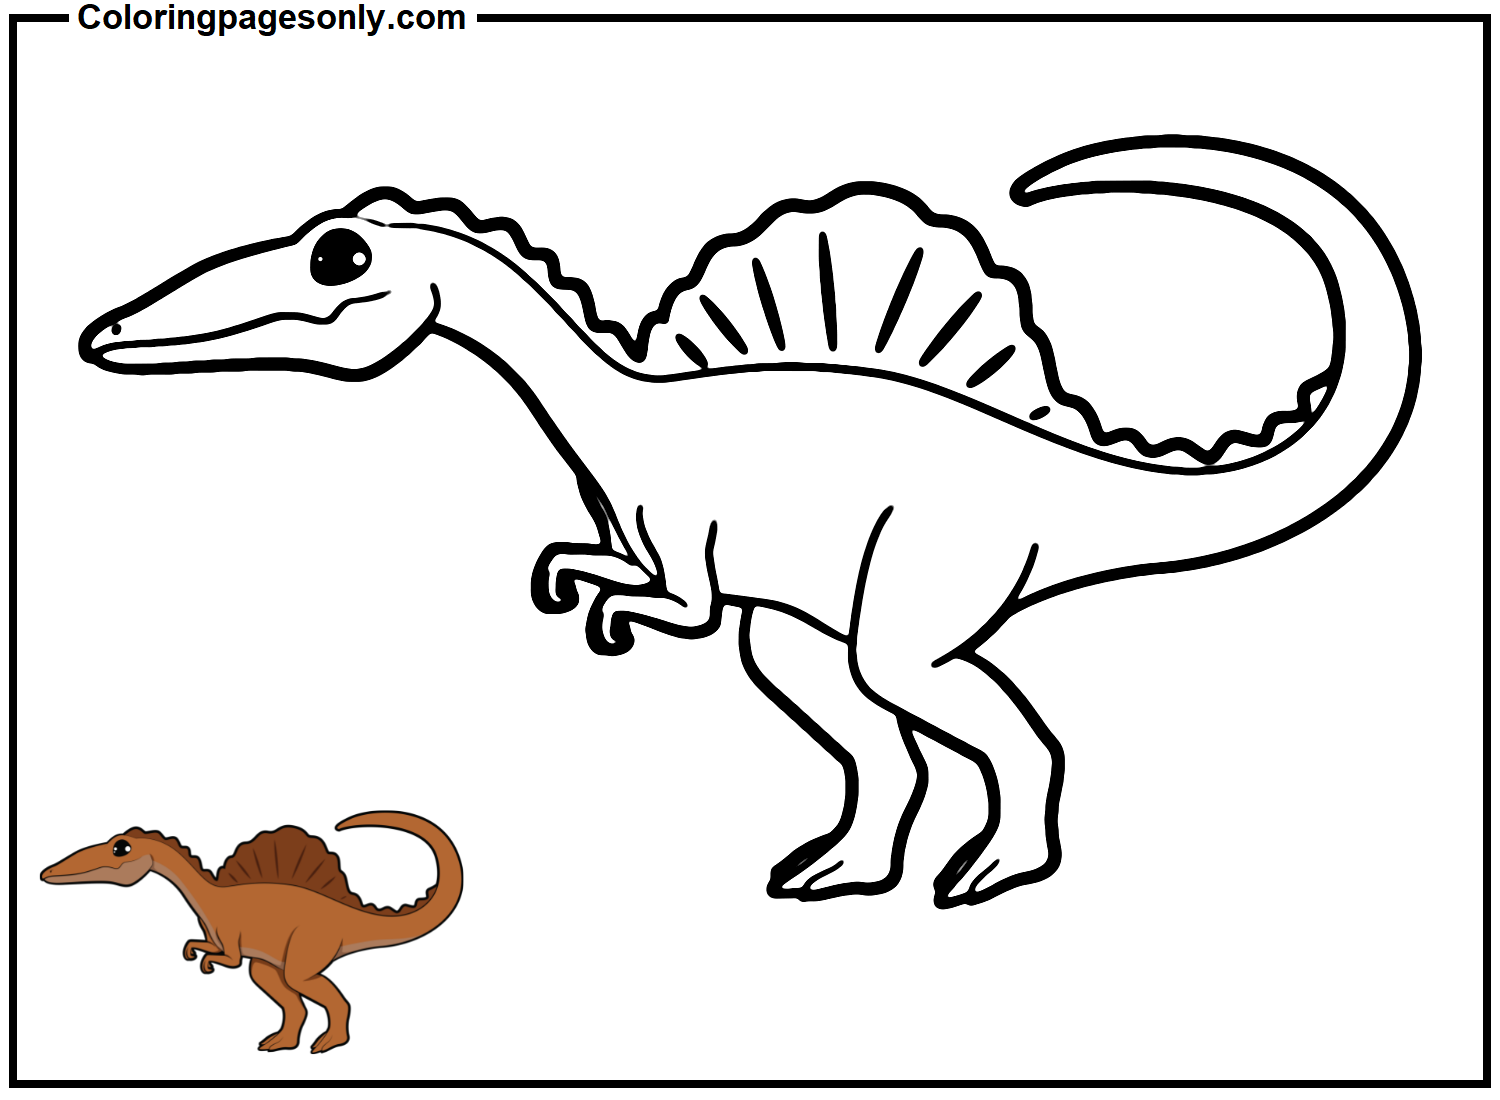 Spinosaurus-Bild von Spinosaurus